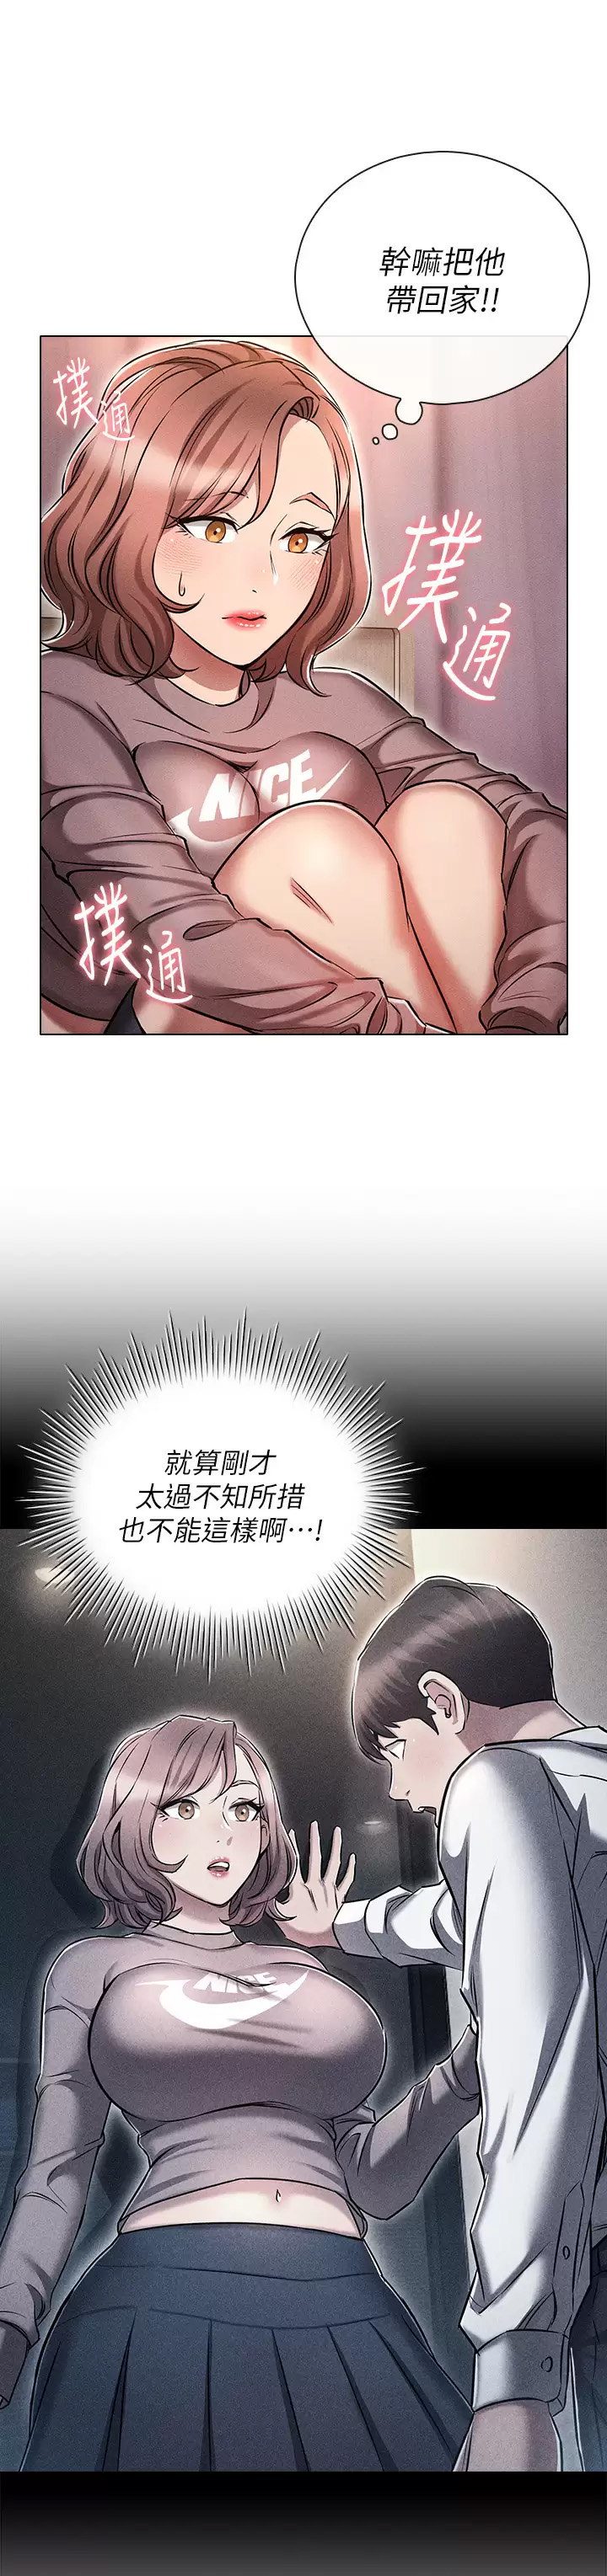 韩国污漫画 魯蛇的多重宇宙 第13话 满溢的暧昧情欲 19